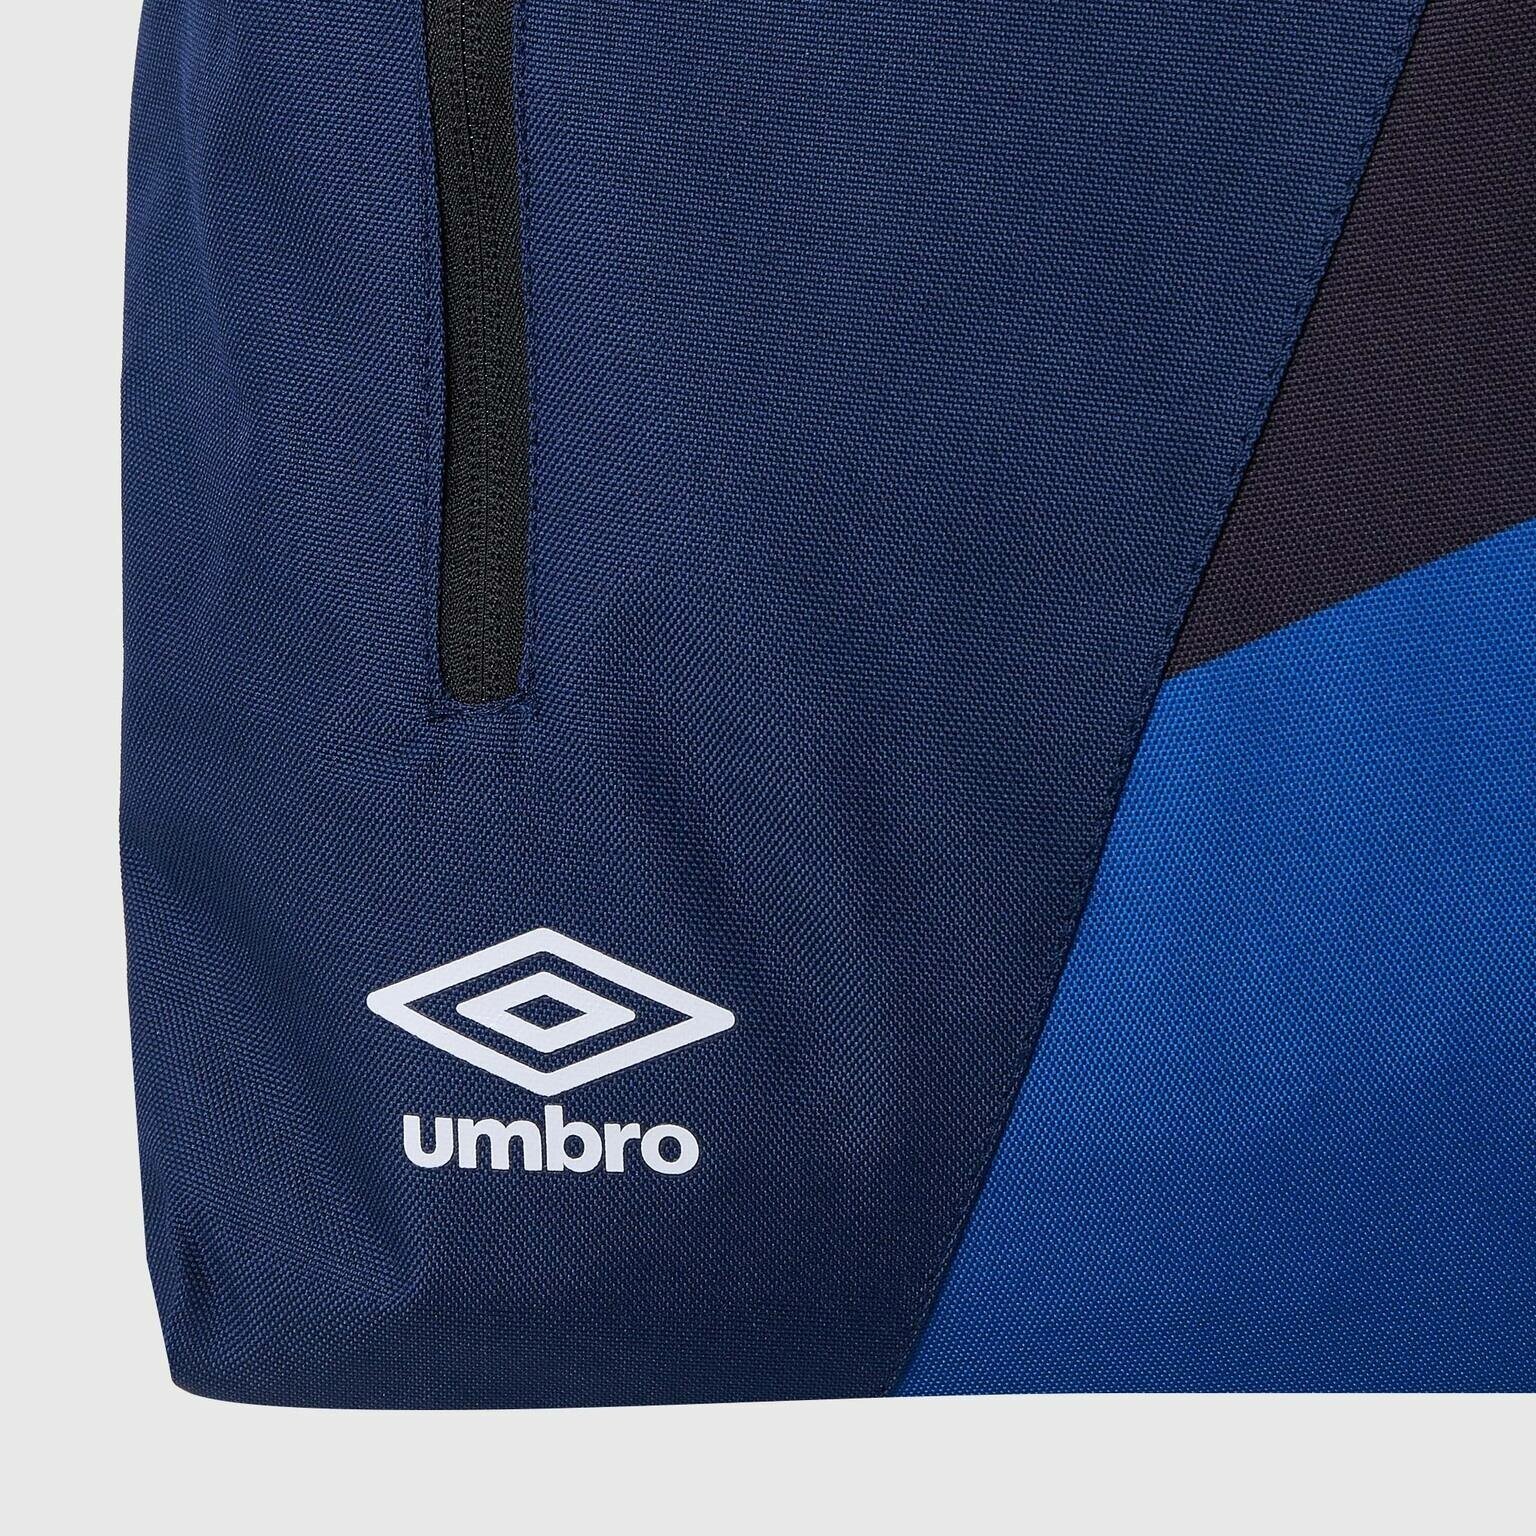 Спортивный рюкзак Umbro Team Training Backpack с одним отделением / Большой рюкзак Umbro для тренировки передним карманом на молнии / сине-черный, 23л, 43 х 31 х 17 см